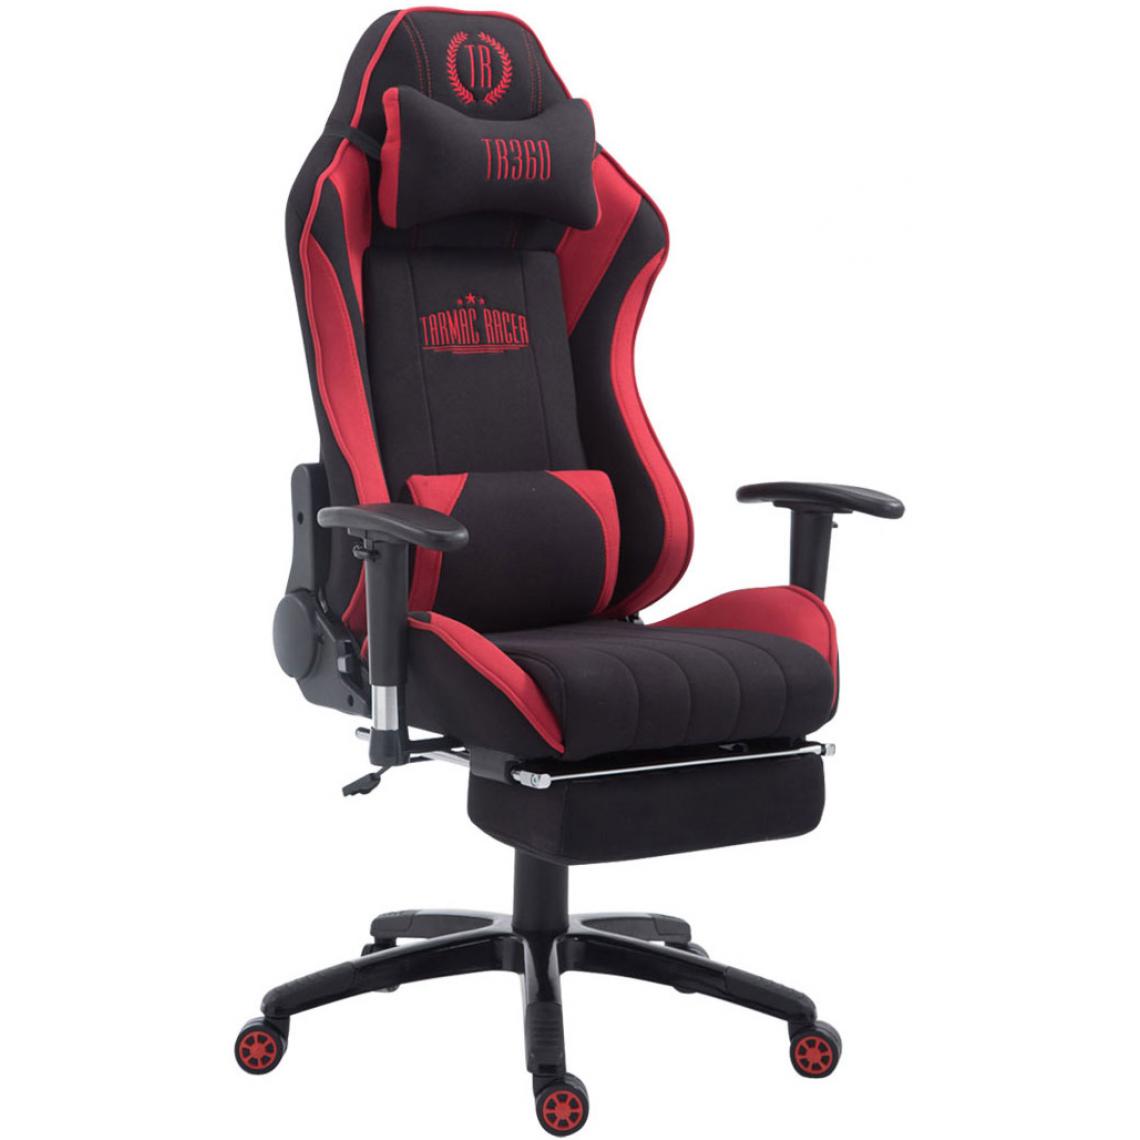 Icaverne - Admirable Chaise de bureau reference Luanda Shift V2 en tissu avec repose-pieds couleur noir rouge - Chaises